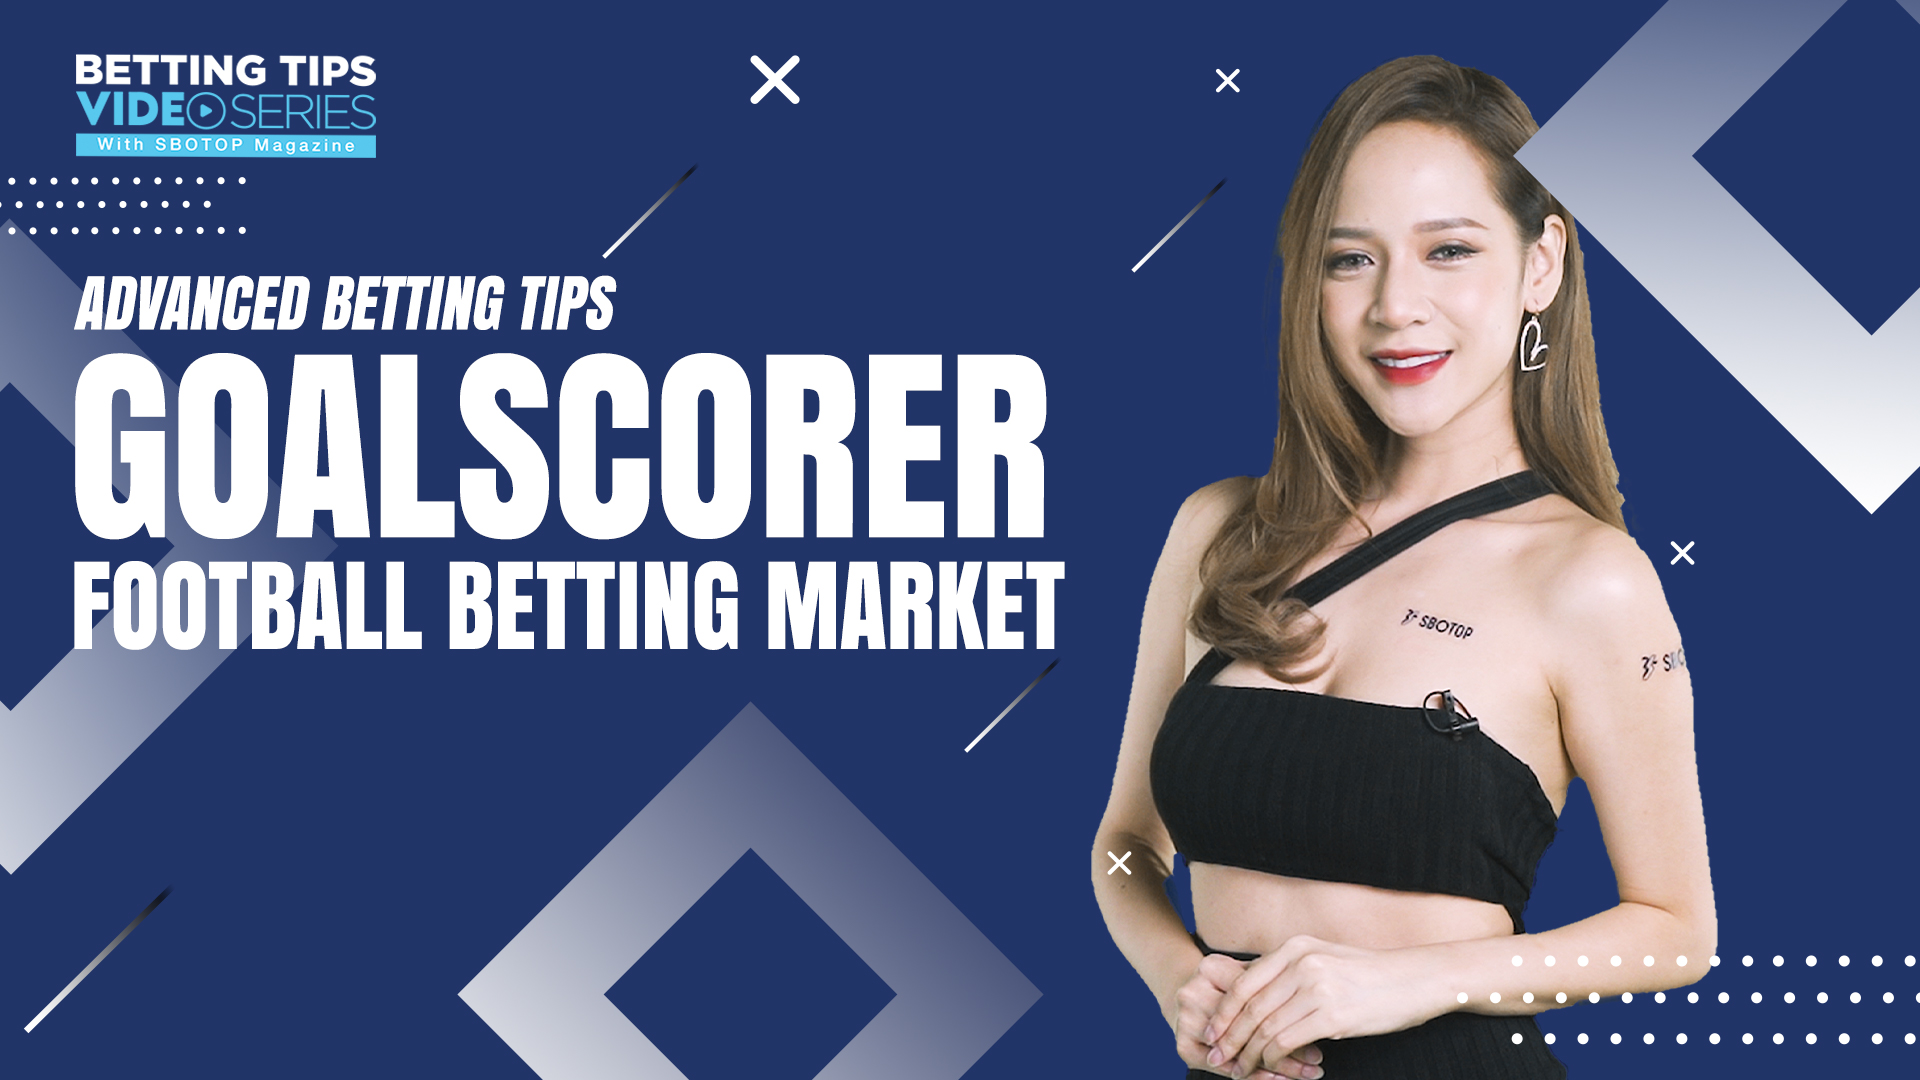 Goalscorer Football Betting Market Blog Featured Image